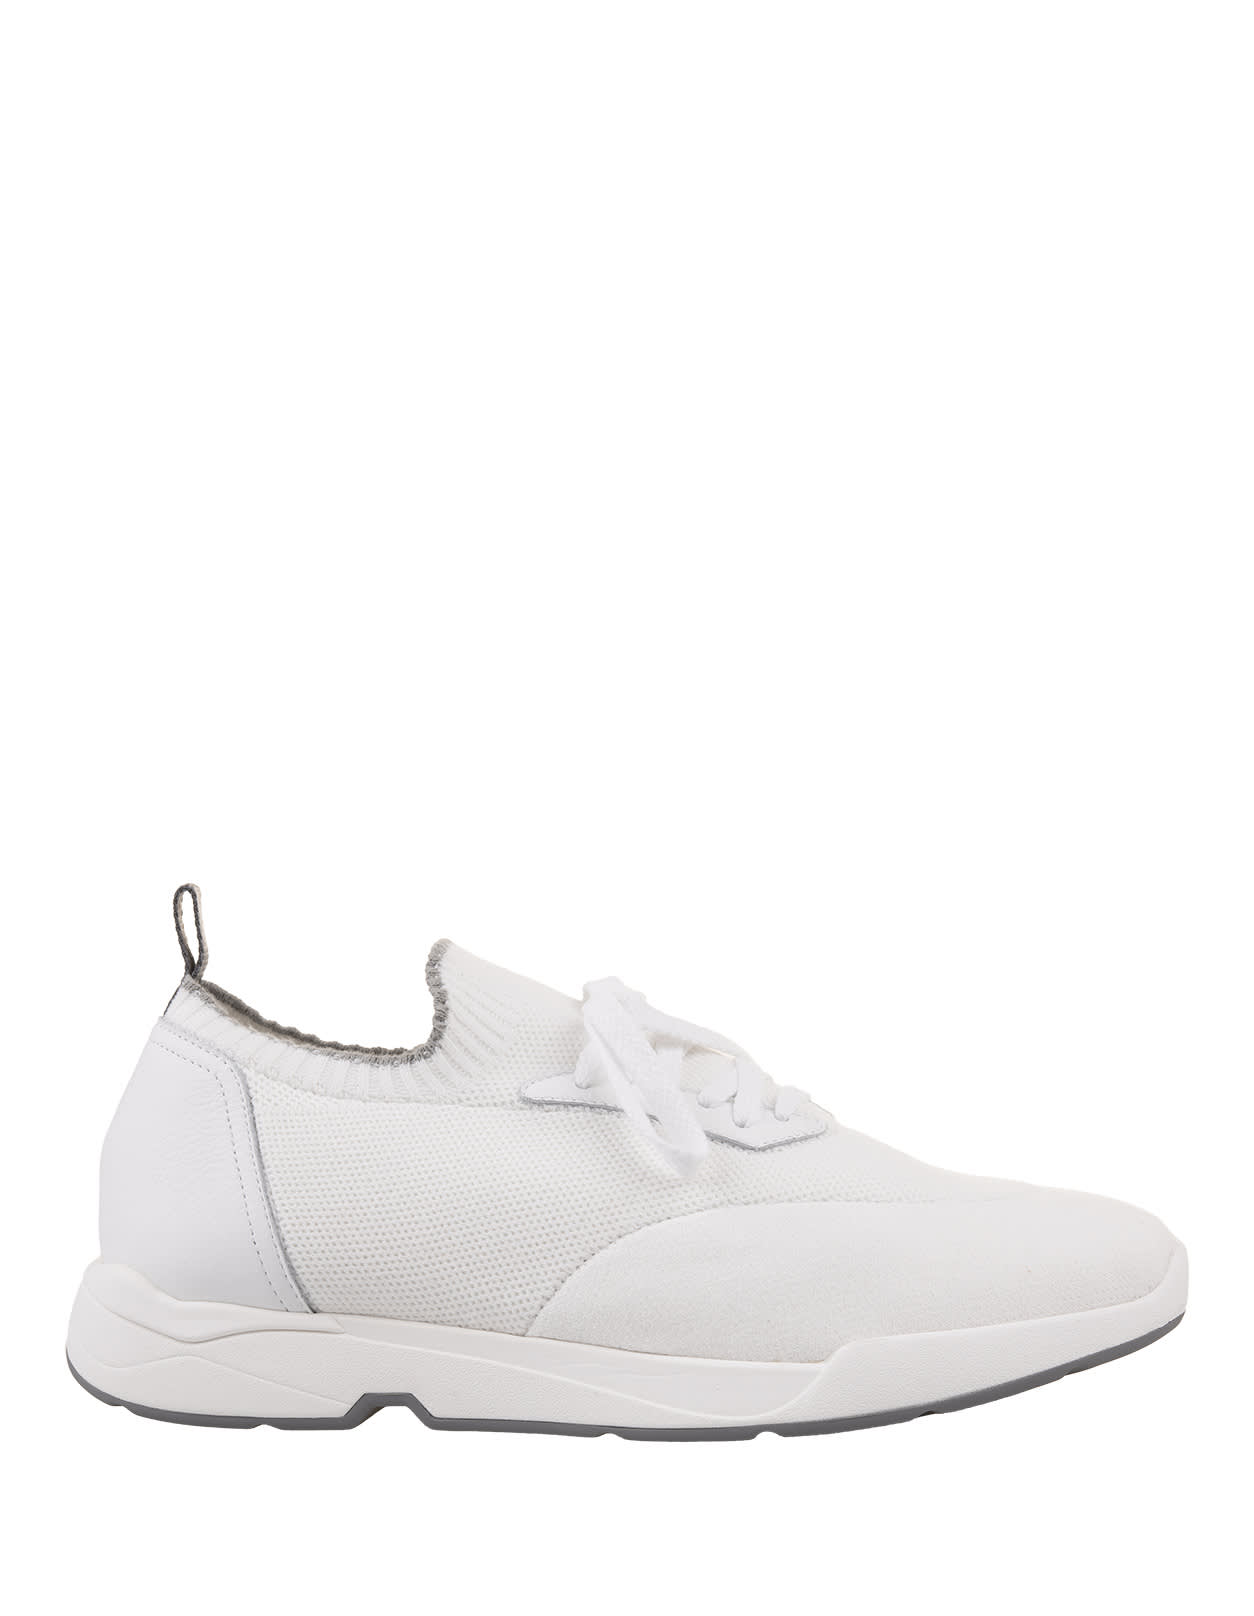 Andrea Ventura W-dragon Sneakers In White Fashion Fabric